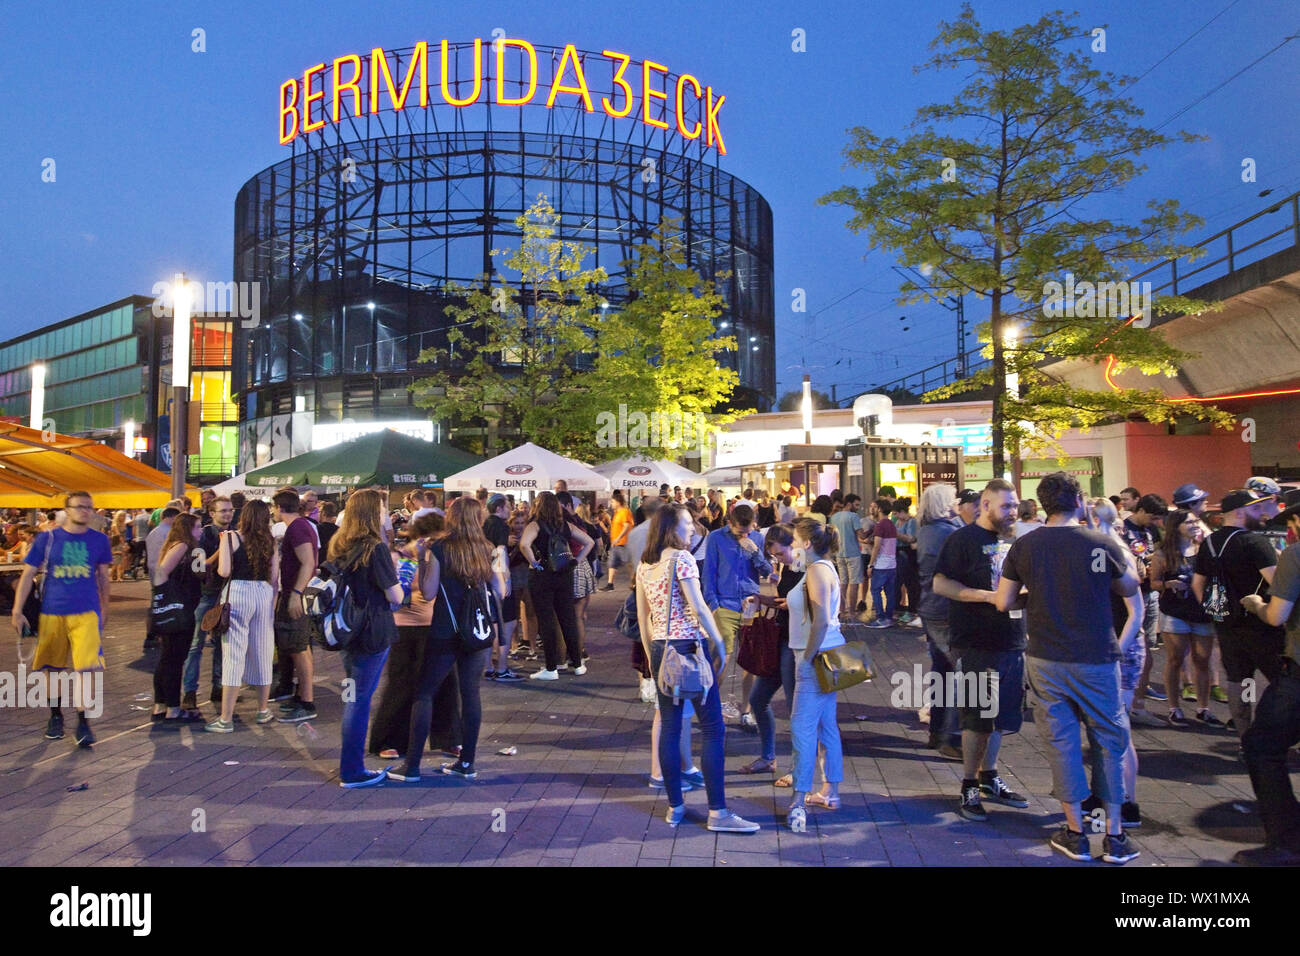 Beaucoup de gens au crépuscule dans le quartier des divertissements d'Bemudadreieck, Bochum, Allemagne, Europe Banque D'Images